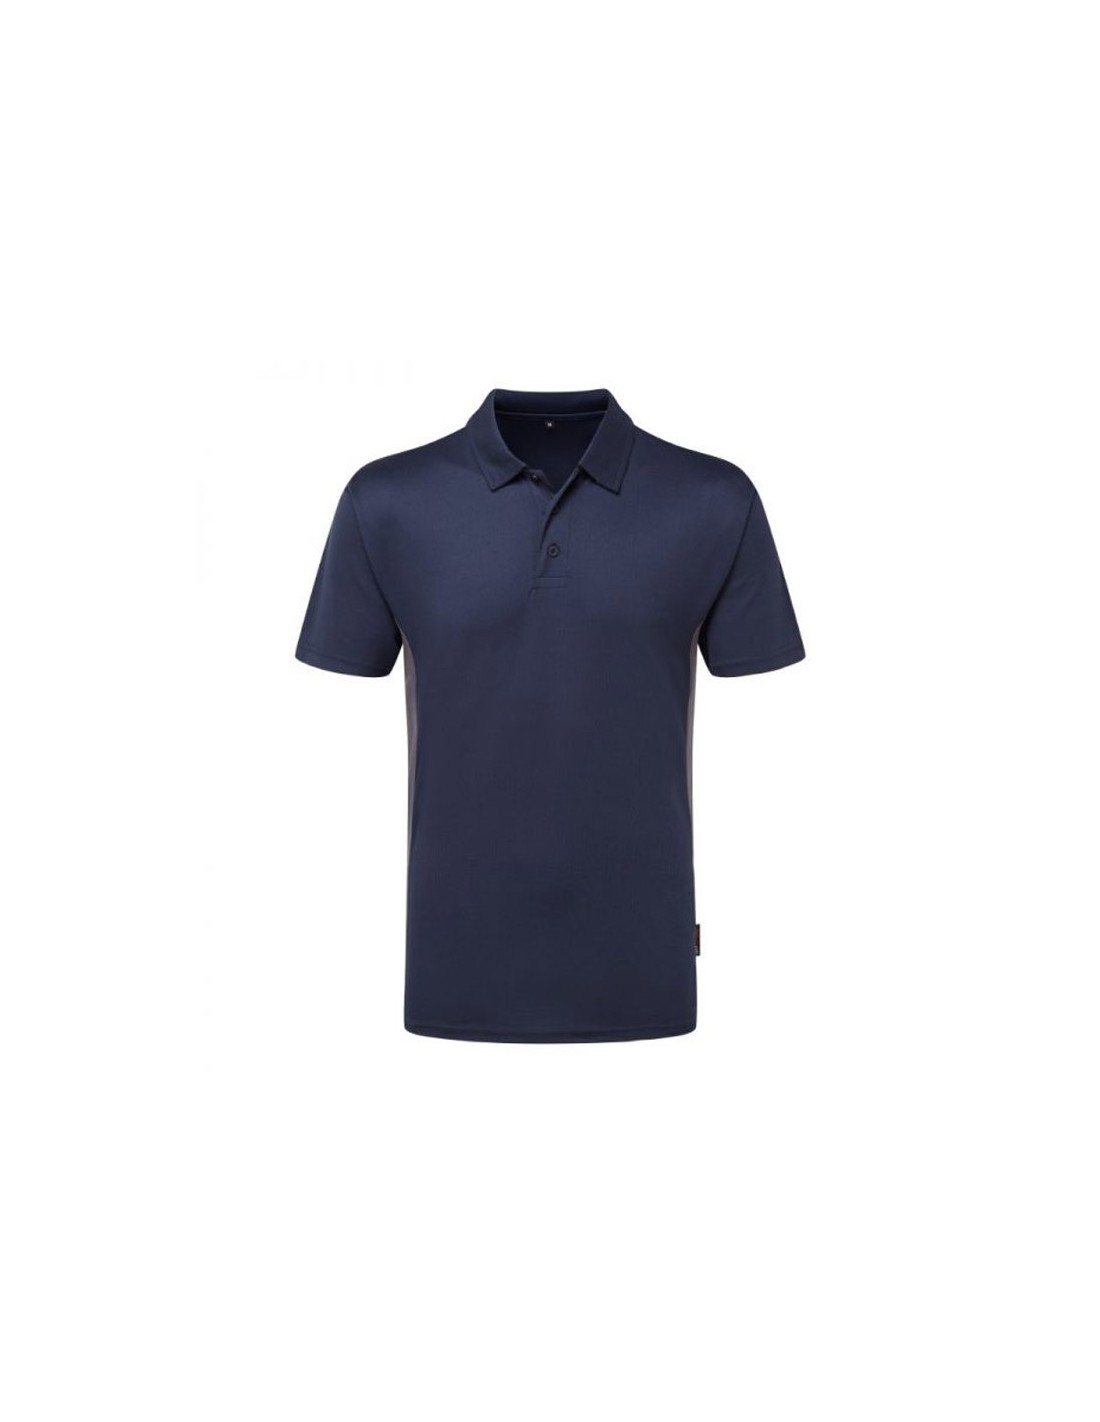 Tuffstuff Pro Work Polo Shirt Navy Sizes S-XXL